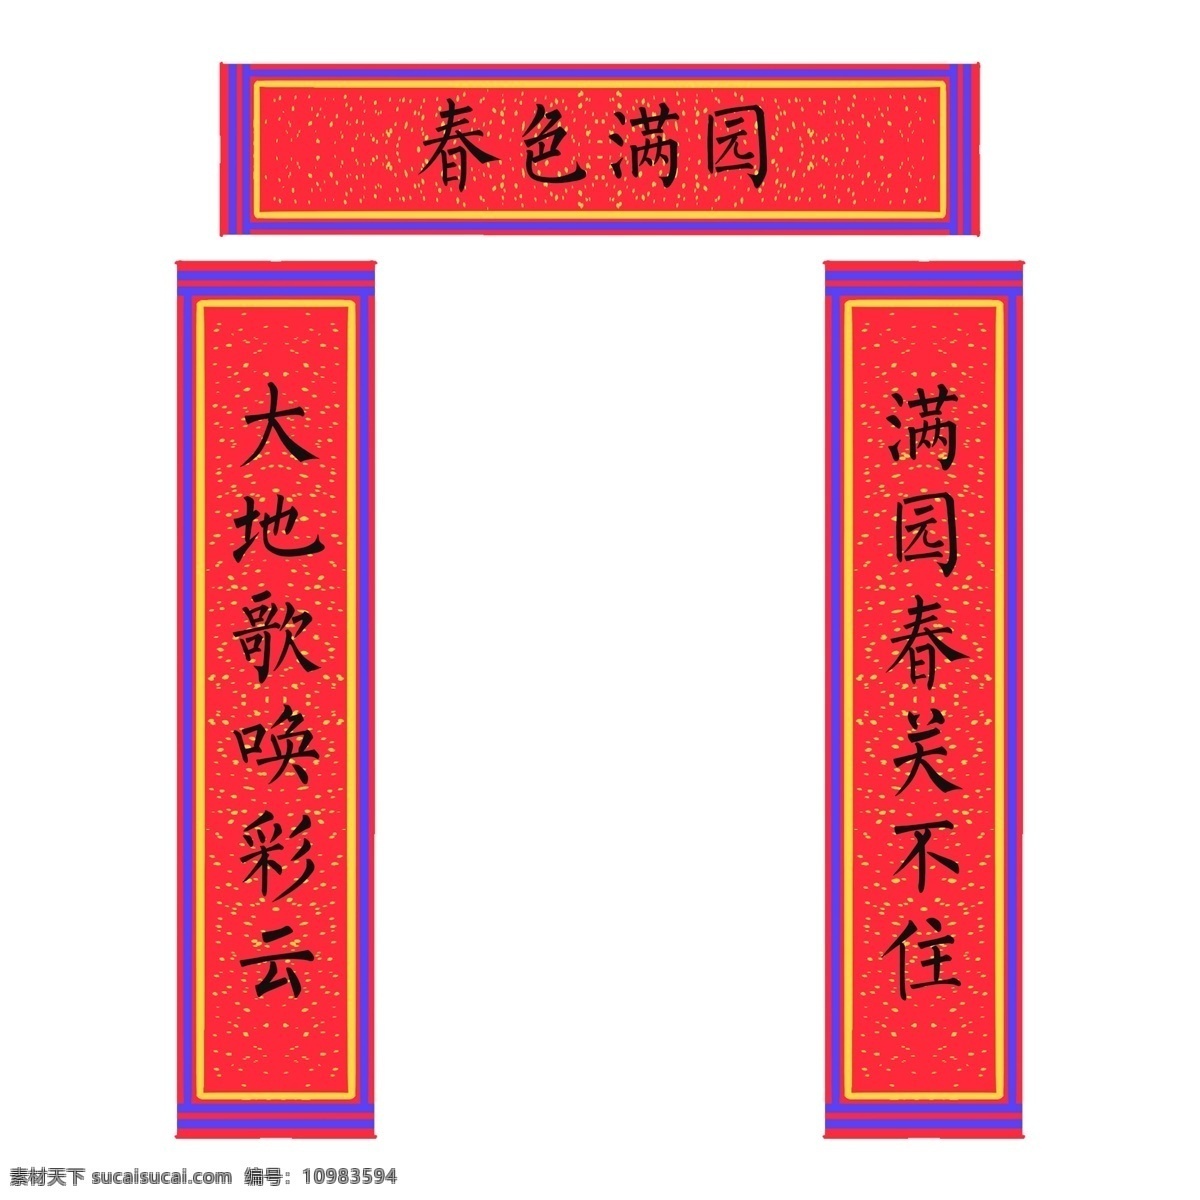 精美 手绘 对联 插画 精美的对联 彩色对联插画 手绘新年对联 新春对联 优美的文字 中国风 传统节日